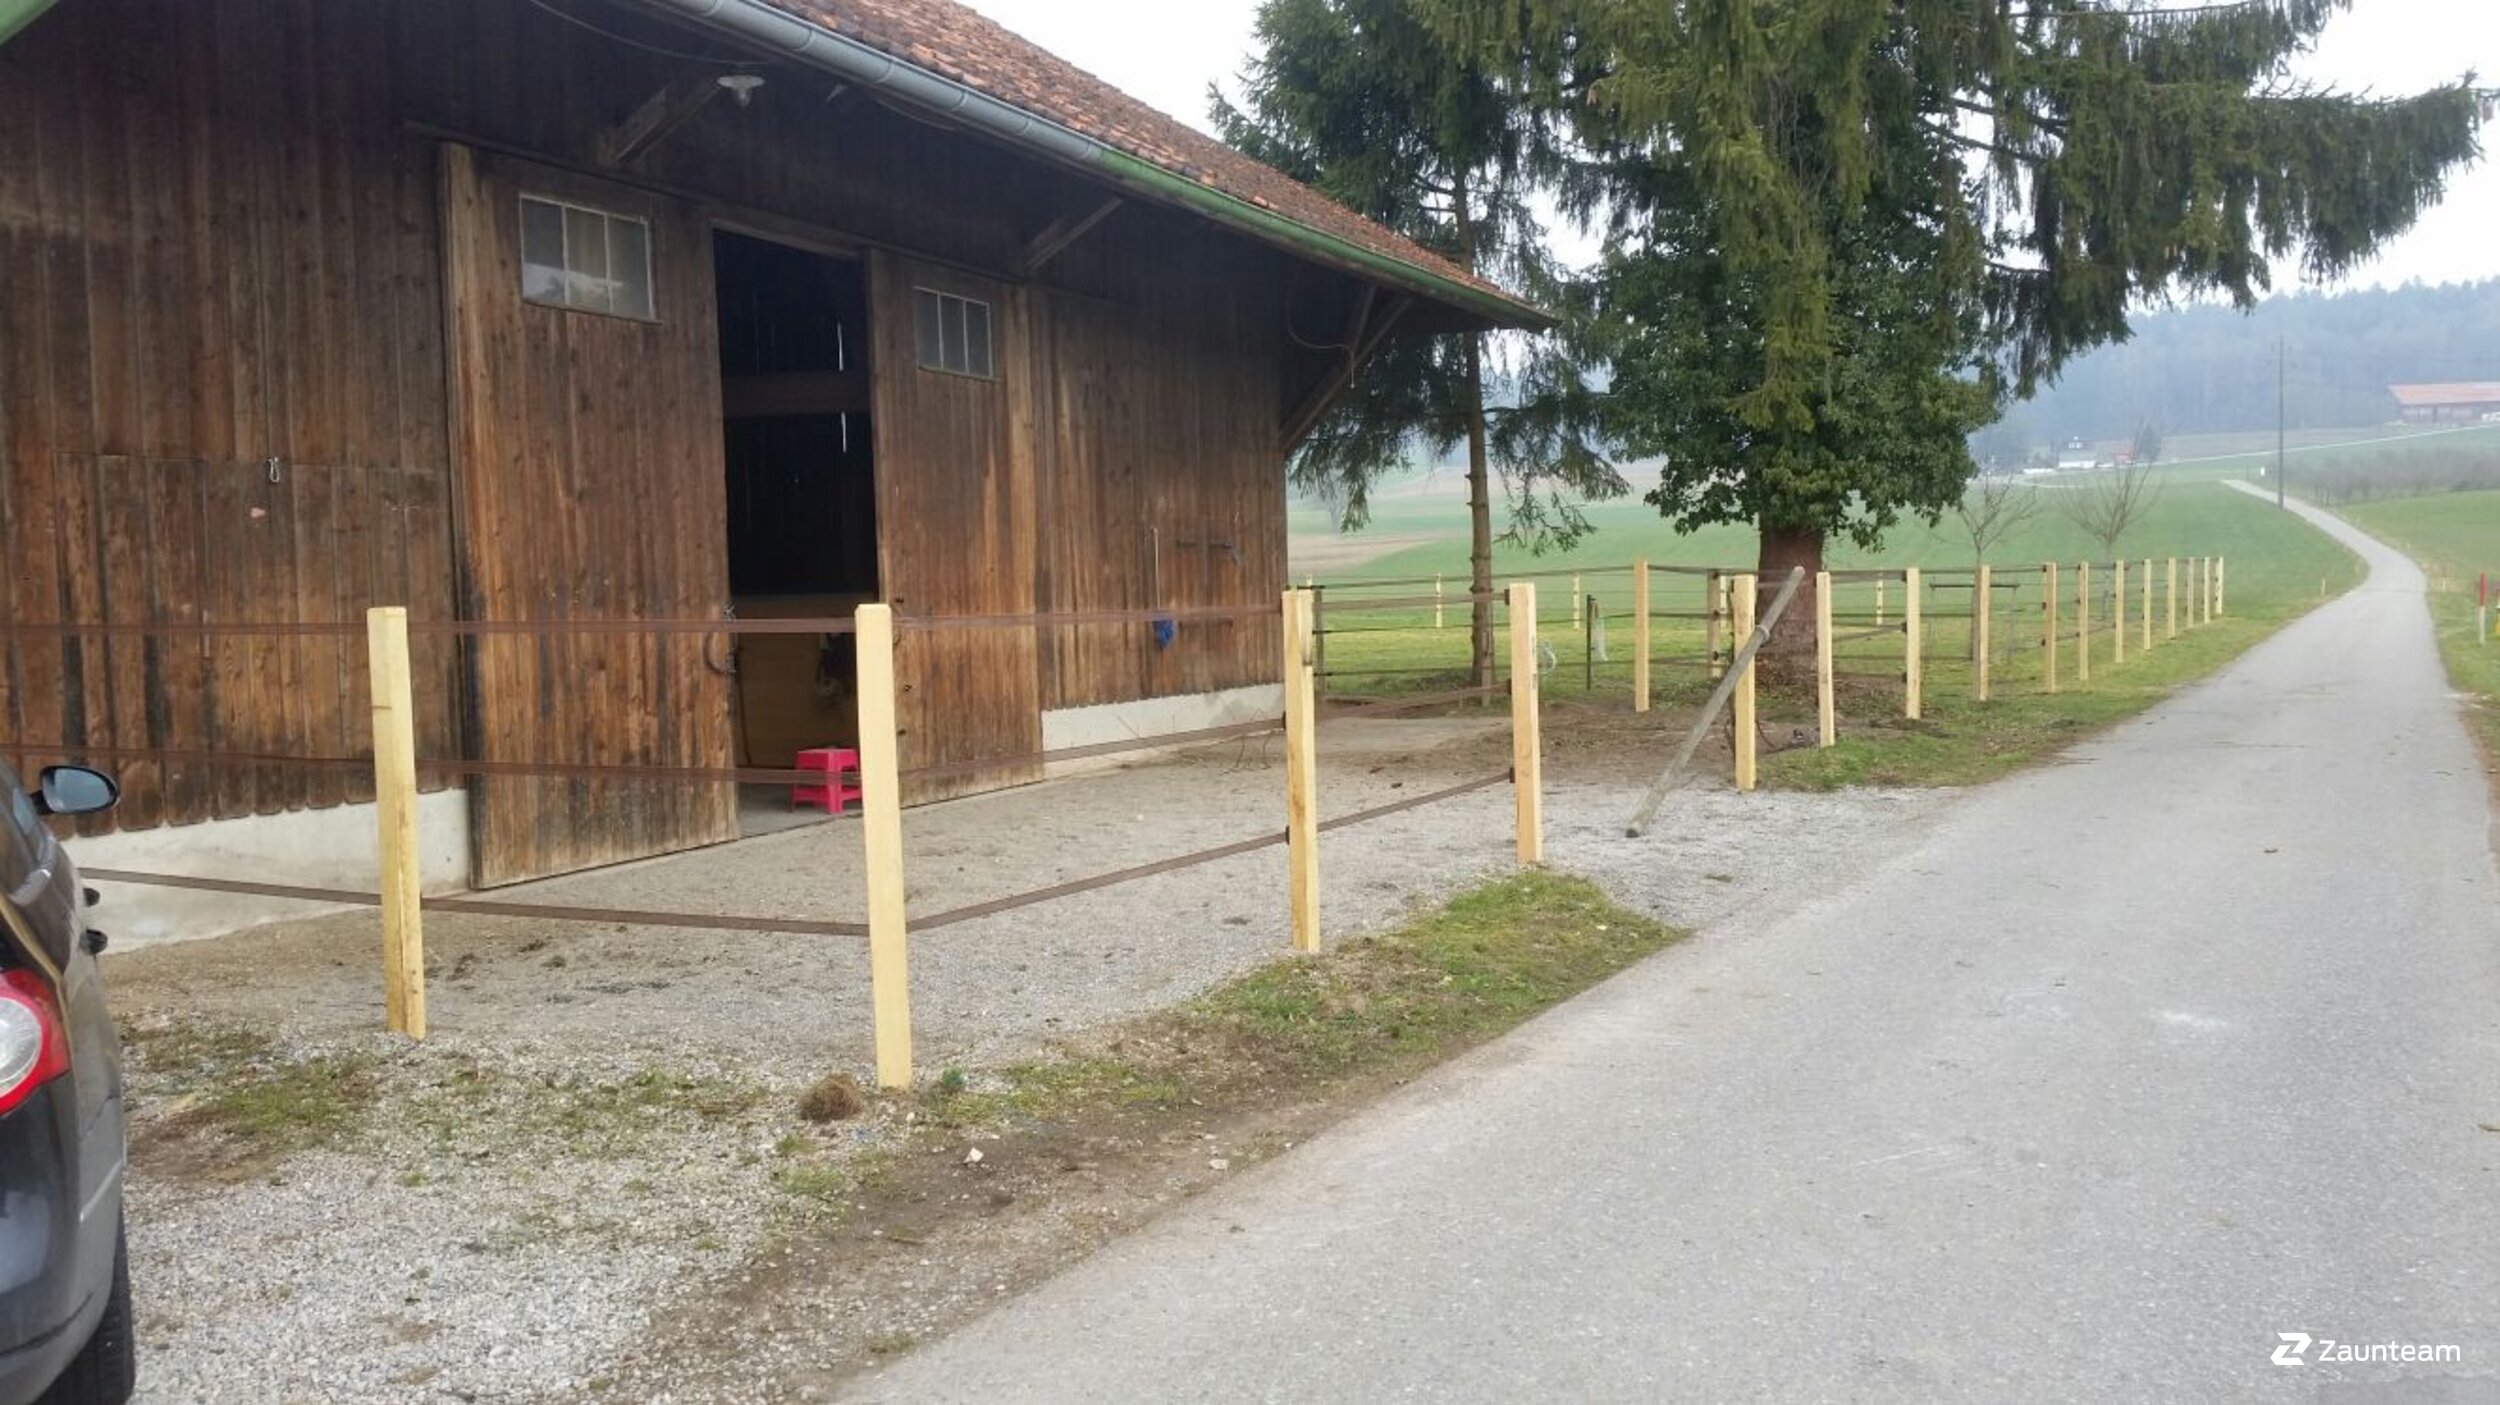 Clôture électrique pour chevaux de 2016 à 8505 Pfyn Suisse de Zaunteam Thurgau AG.